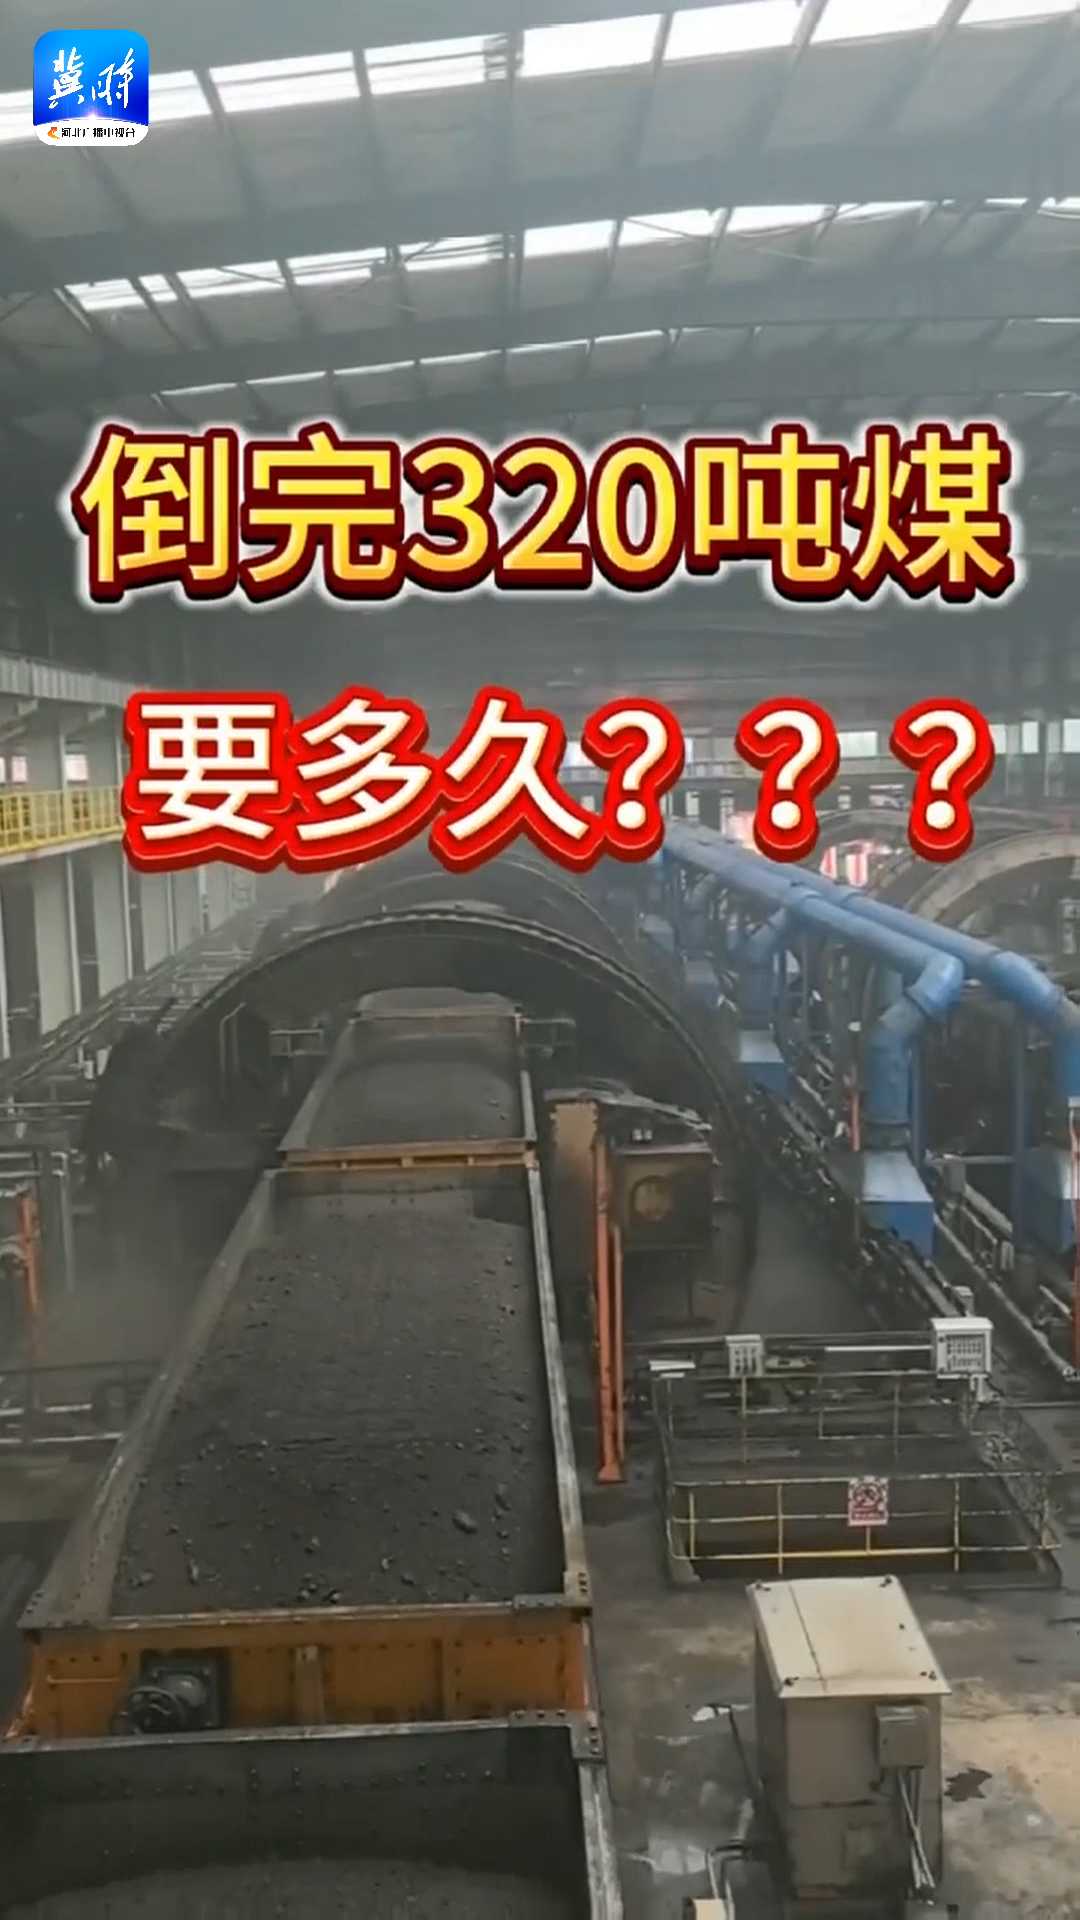 倒完320吨煤要多久？在综合性现代化大港沧州国能黄骅港只要20秒！